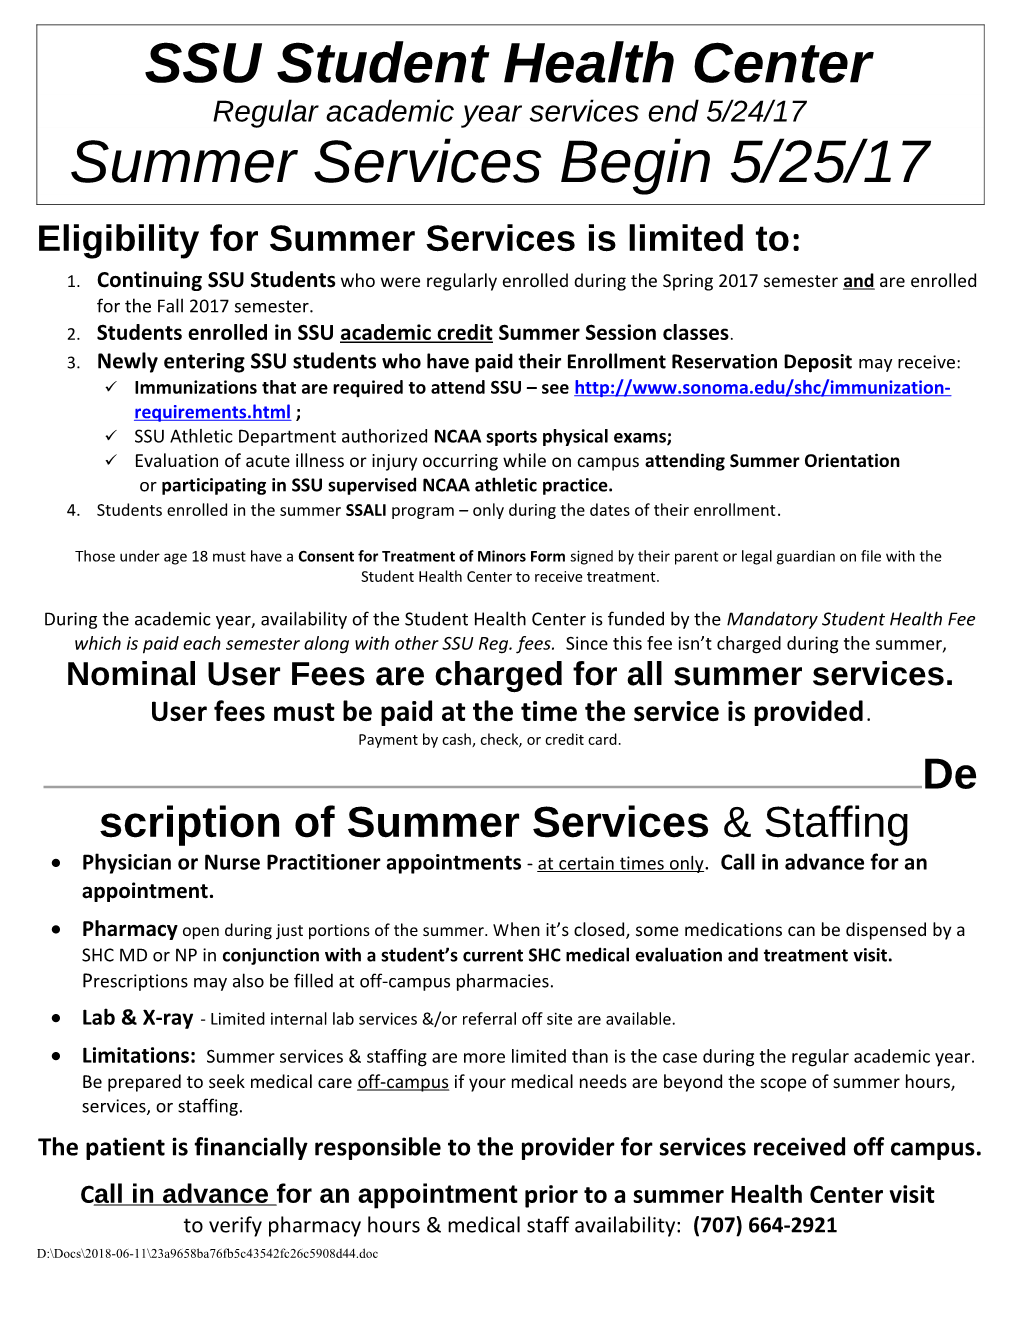 Student Health Center Summer Schedule